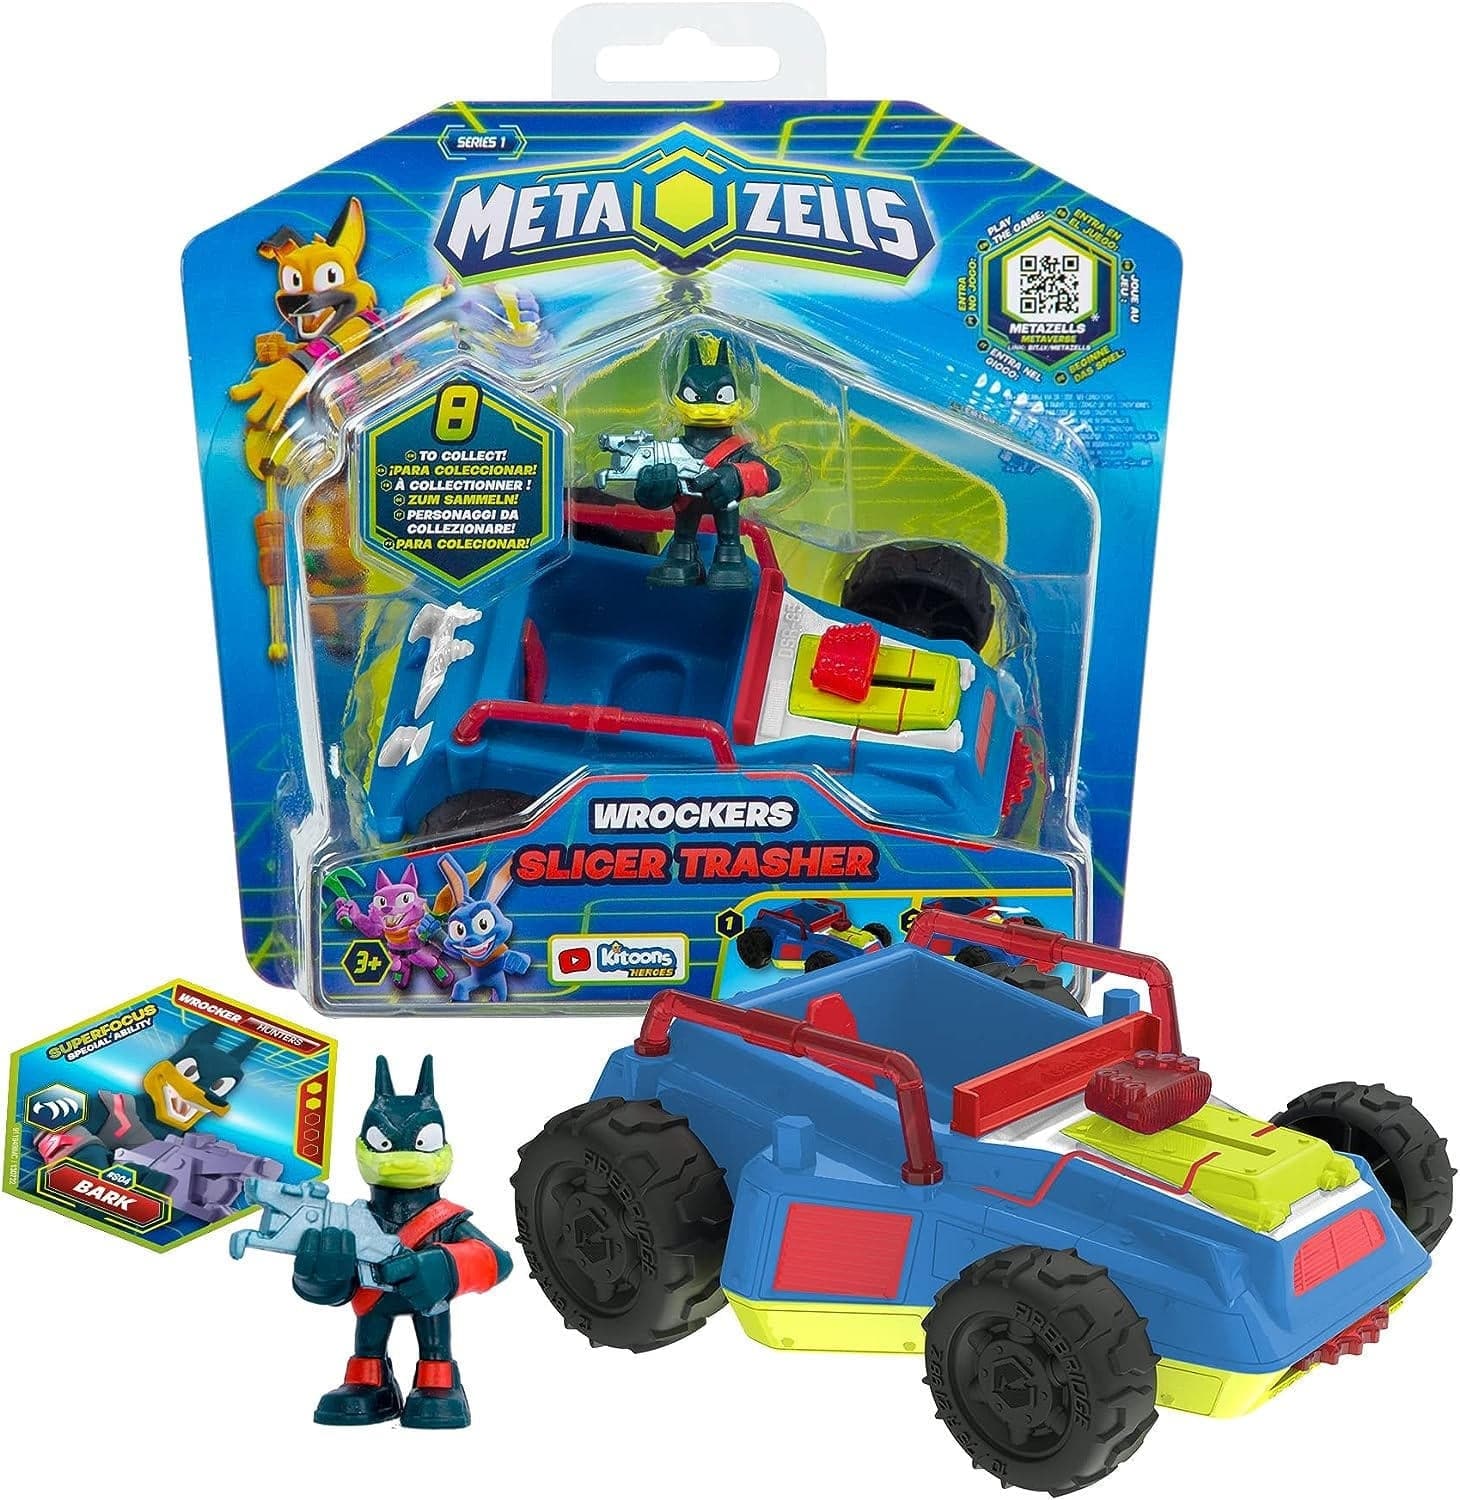 Metazells Vehicle Pack 7